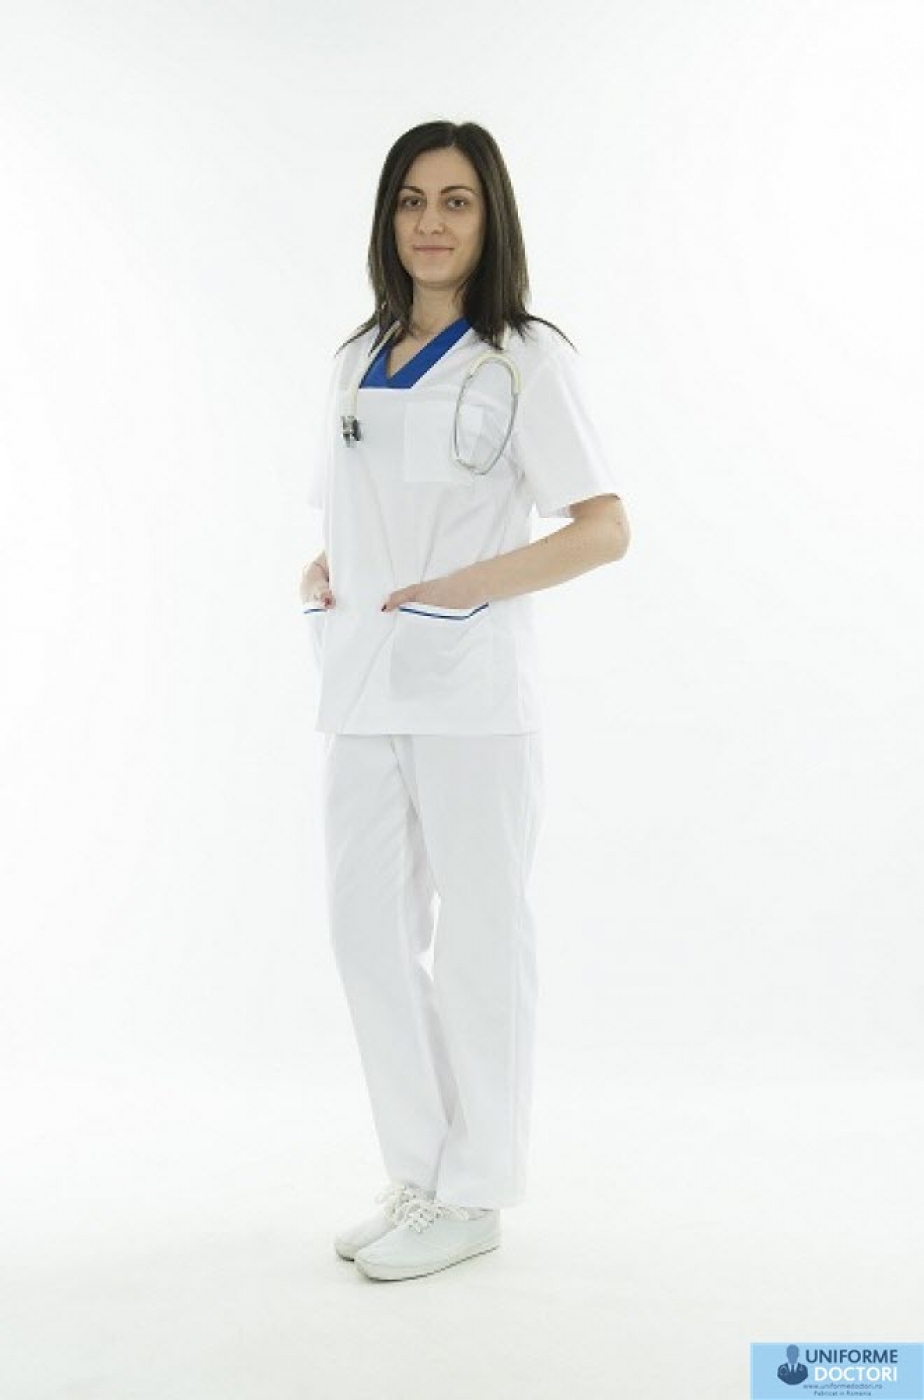 Uniforme medicale – Bluza medicala cu maneca scurta si guler in achior, model bicolor